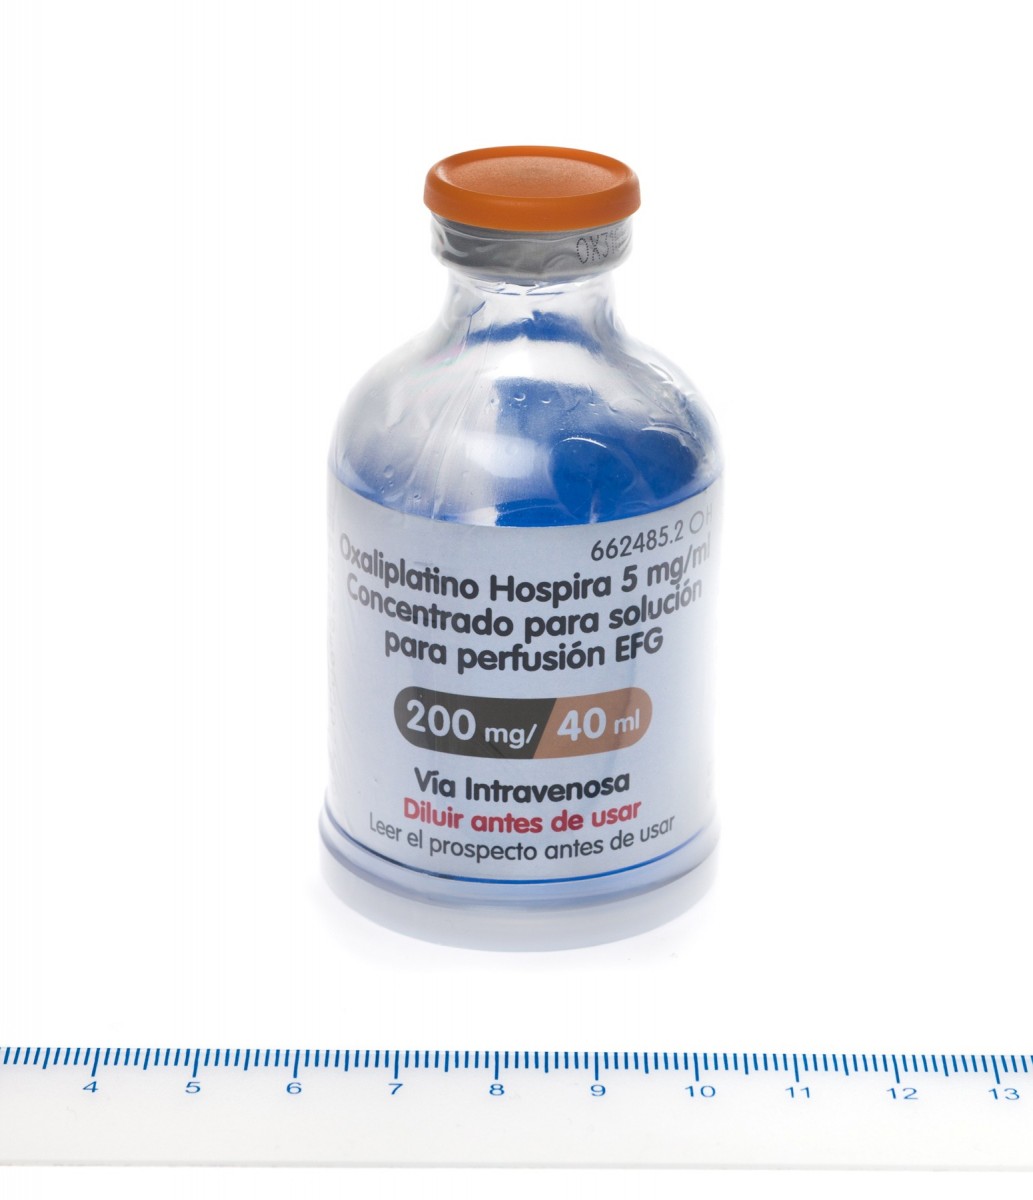 OXALIPLATINO HOSPIRA 5 mg/ml CONCENTRADO PARA SOLUCION PARA PERFUSION EFG , 1 vial de 10 ml fotografía de la forma farmacéutica.